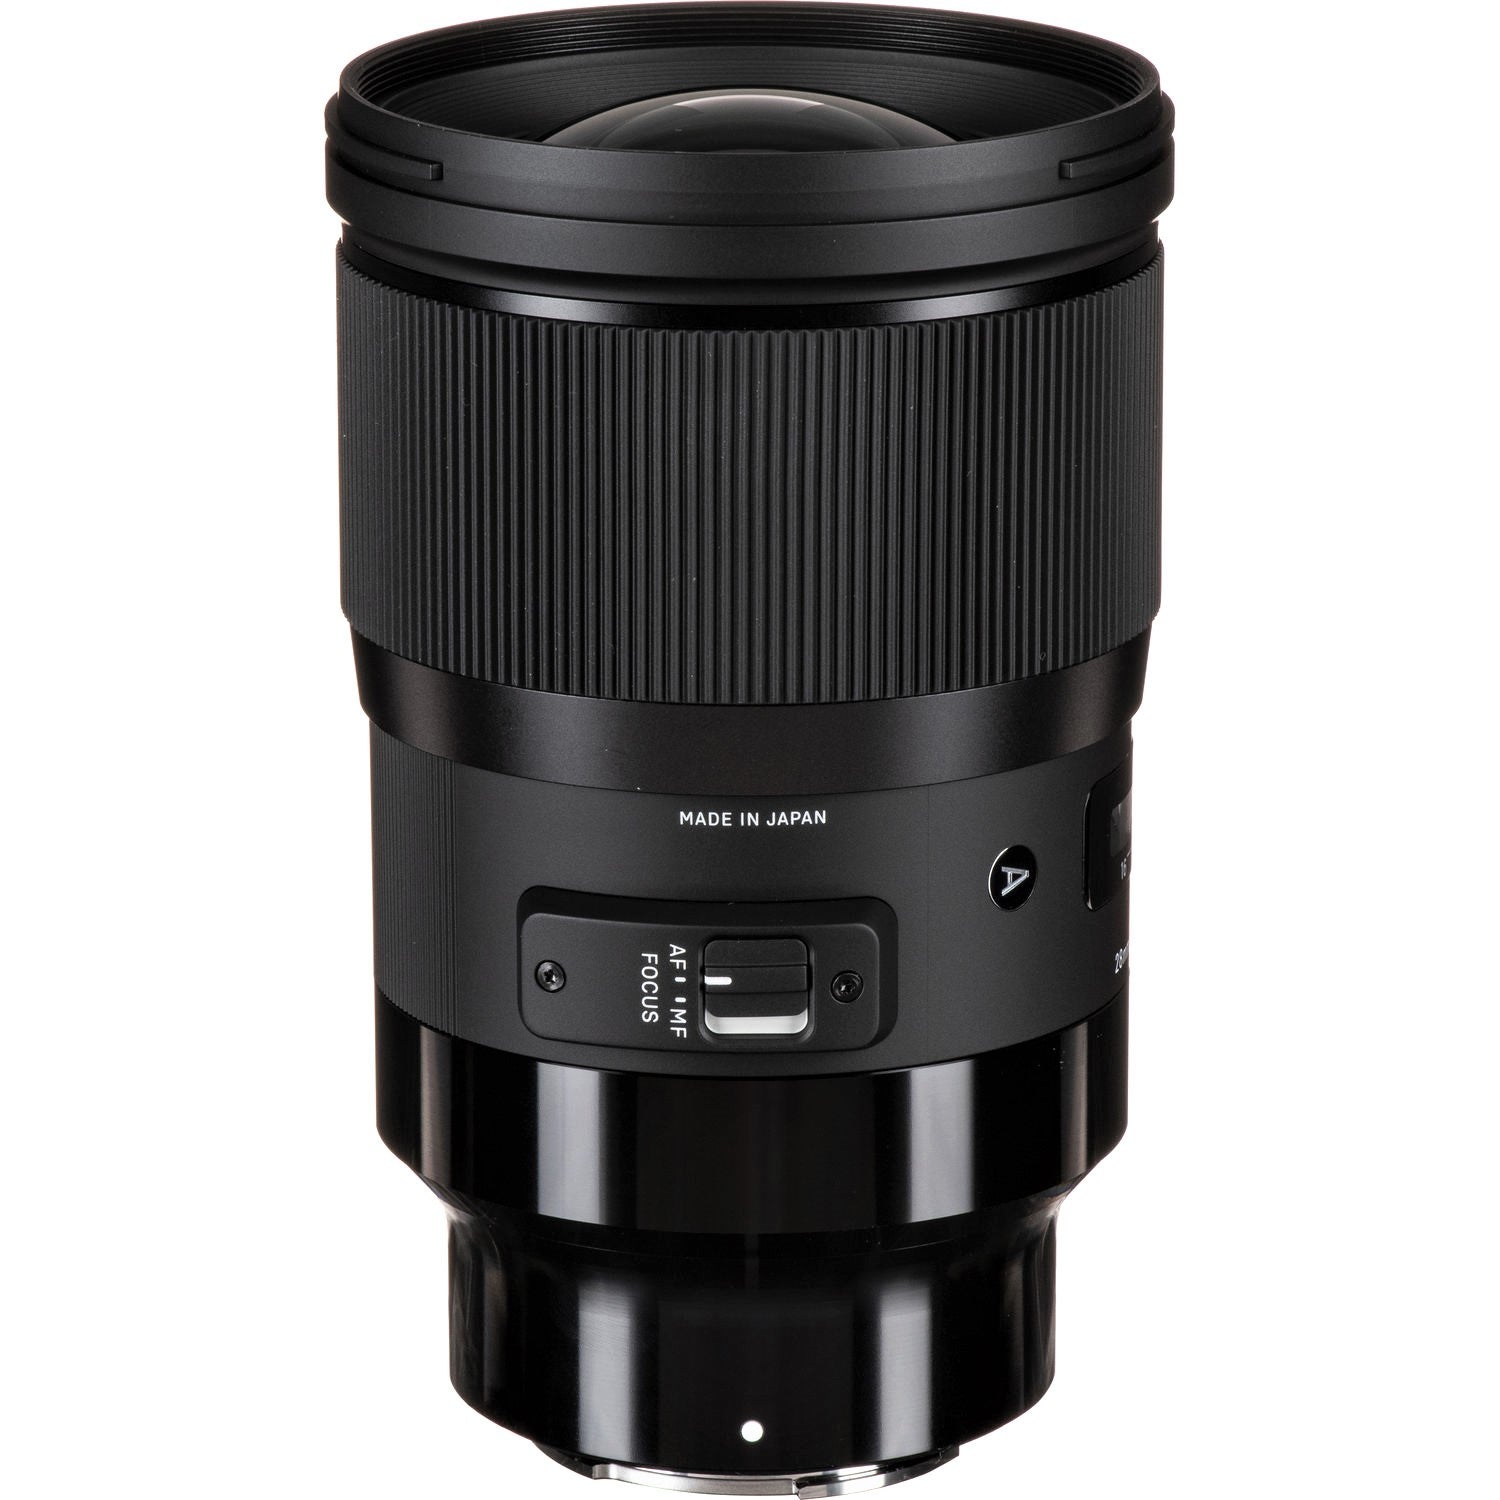 Sigma 28mm F1.4 DG HSM Art Lens for Sony E